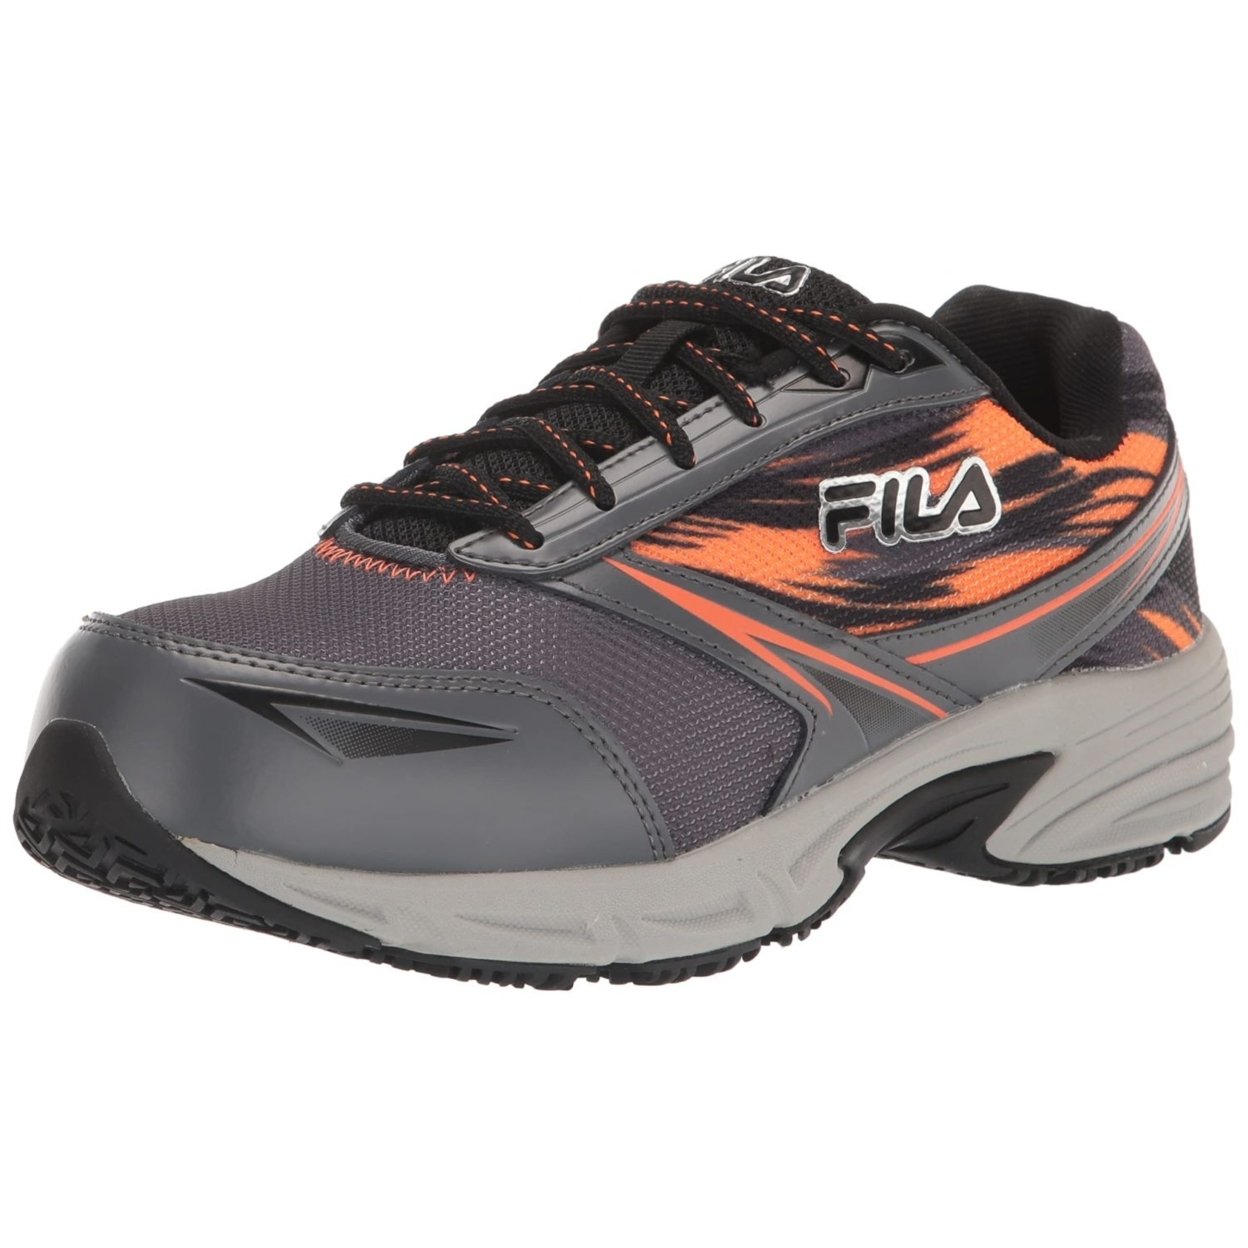 Fila Menâs Memory Meiera 2 Slip Resistant And Composite Toe Work Shoe CSRK/BLK/VORN - Castlerock/Black/Vibrant Orange, 9.5